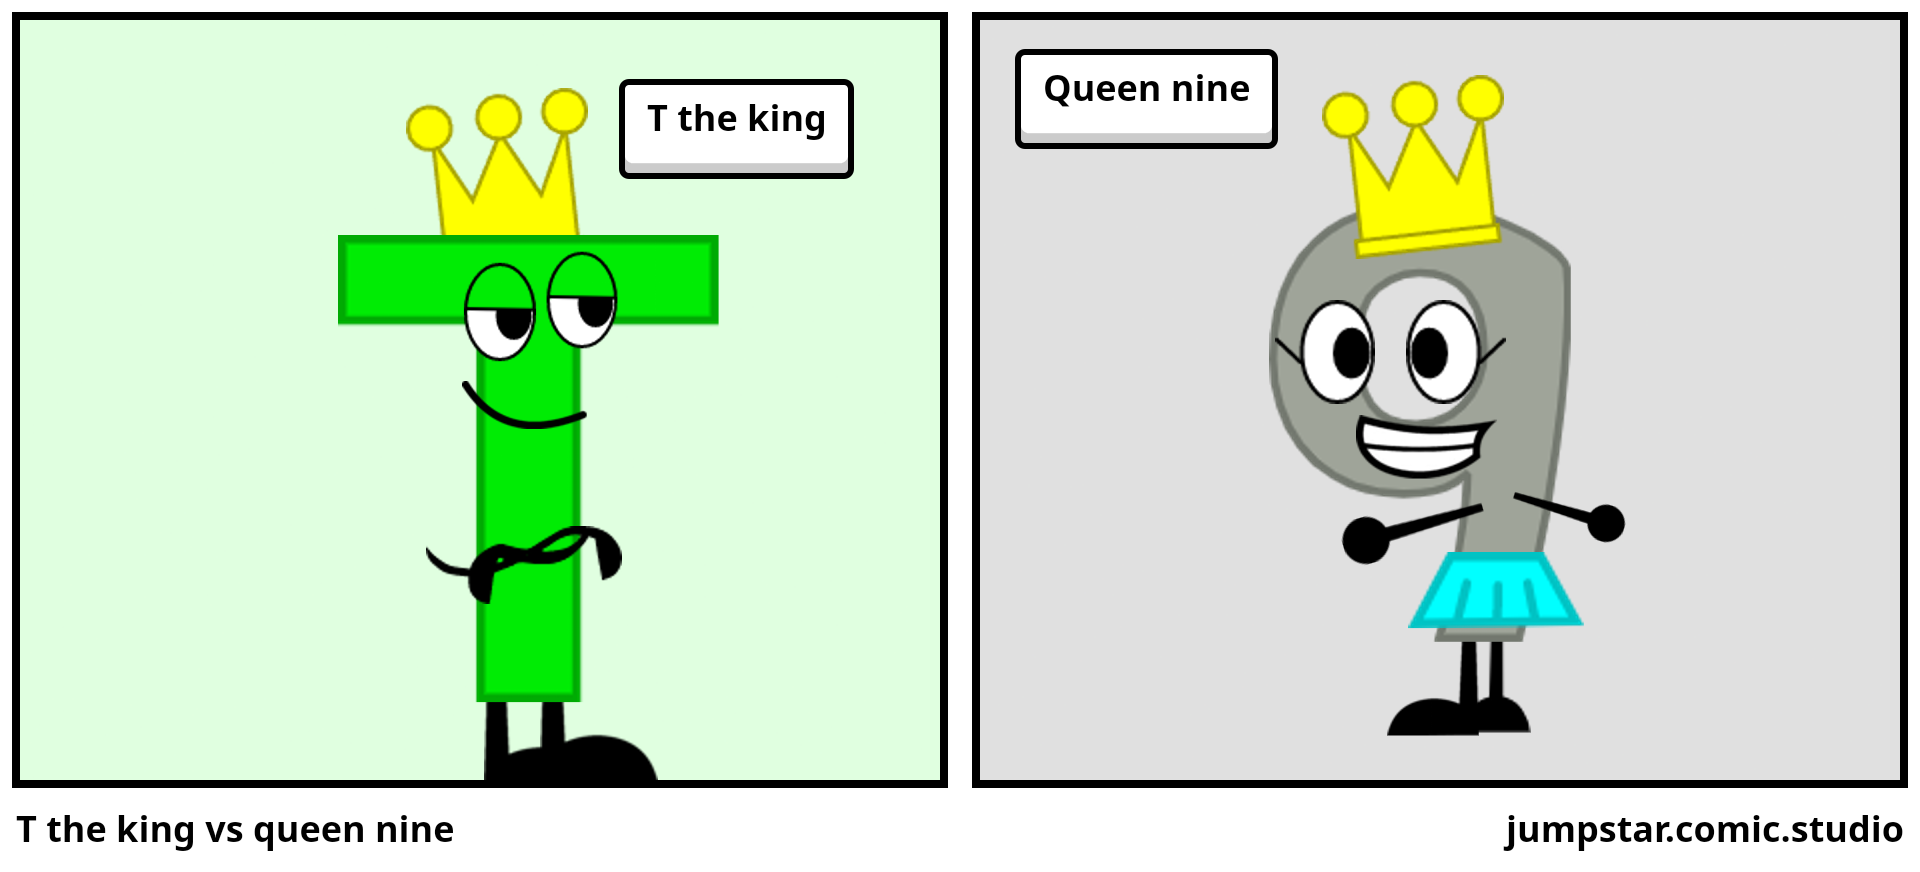 T the king vs queen nine